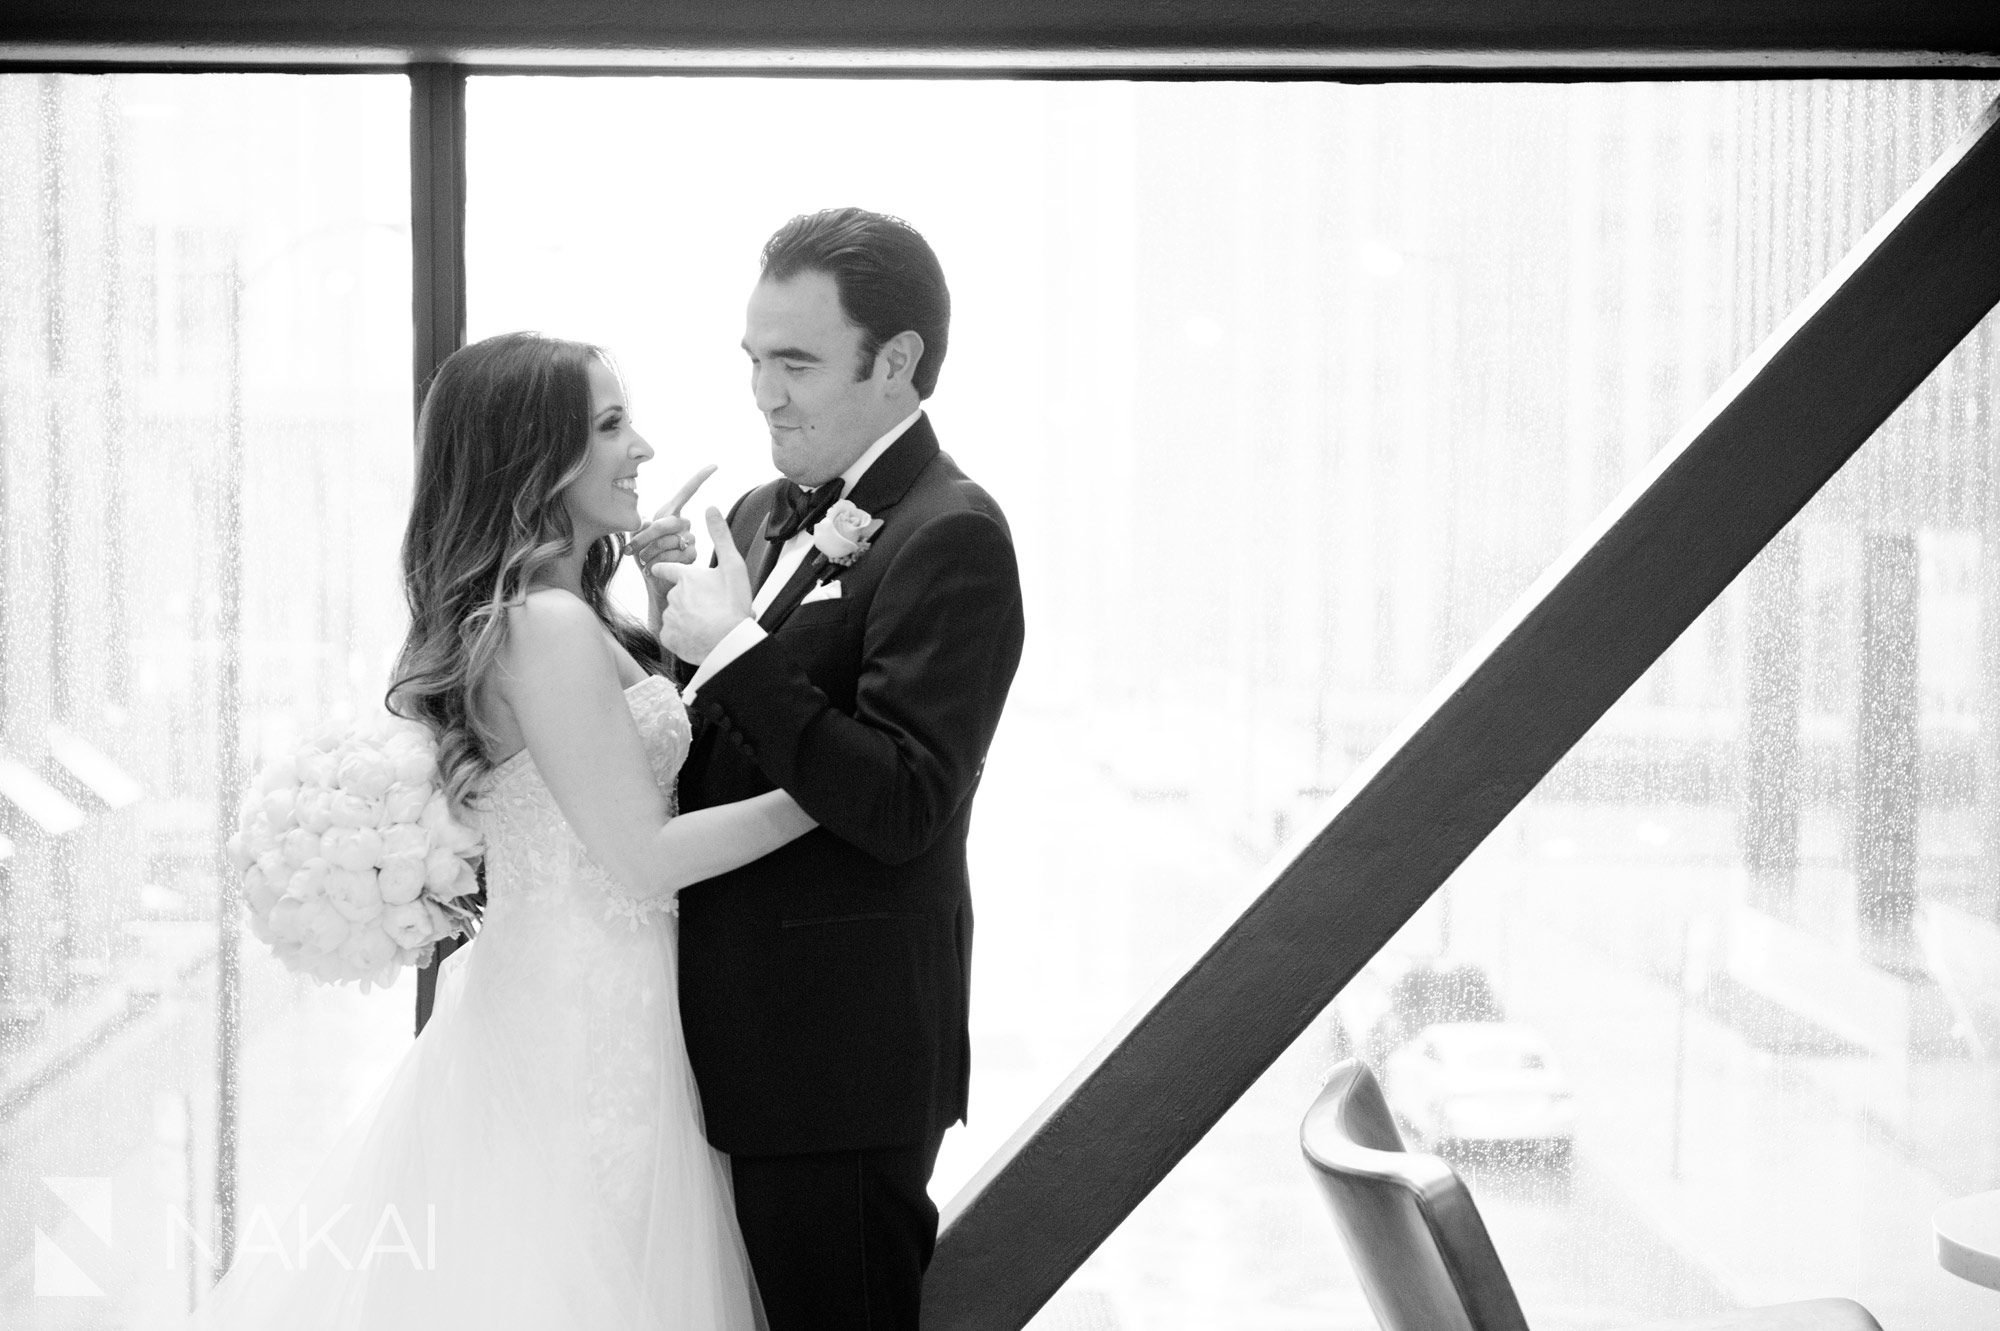 Hyatt chicago regency wedding photo best picture skyway bride groom